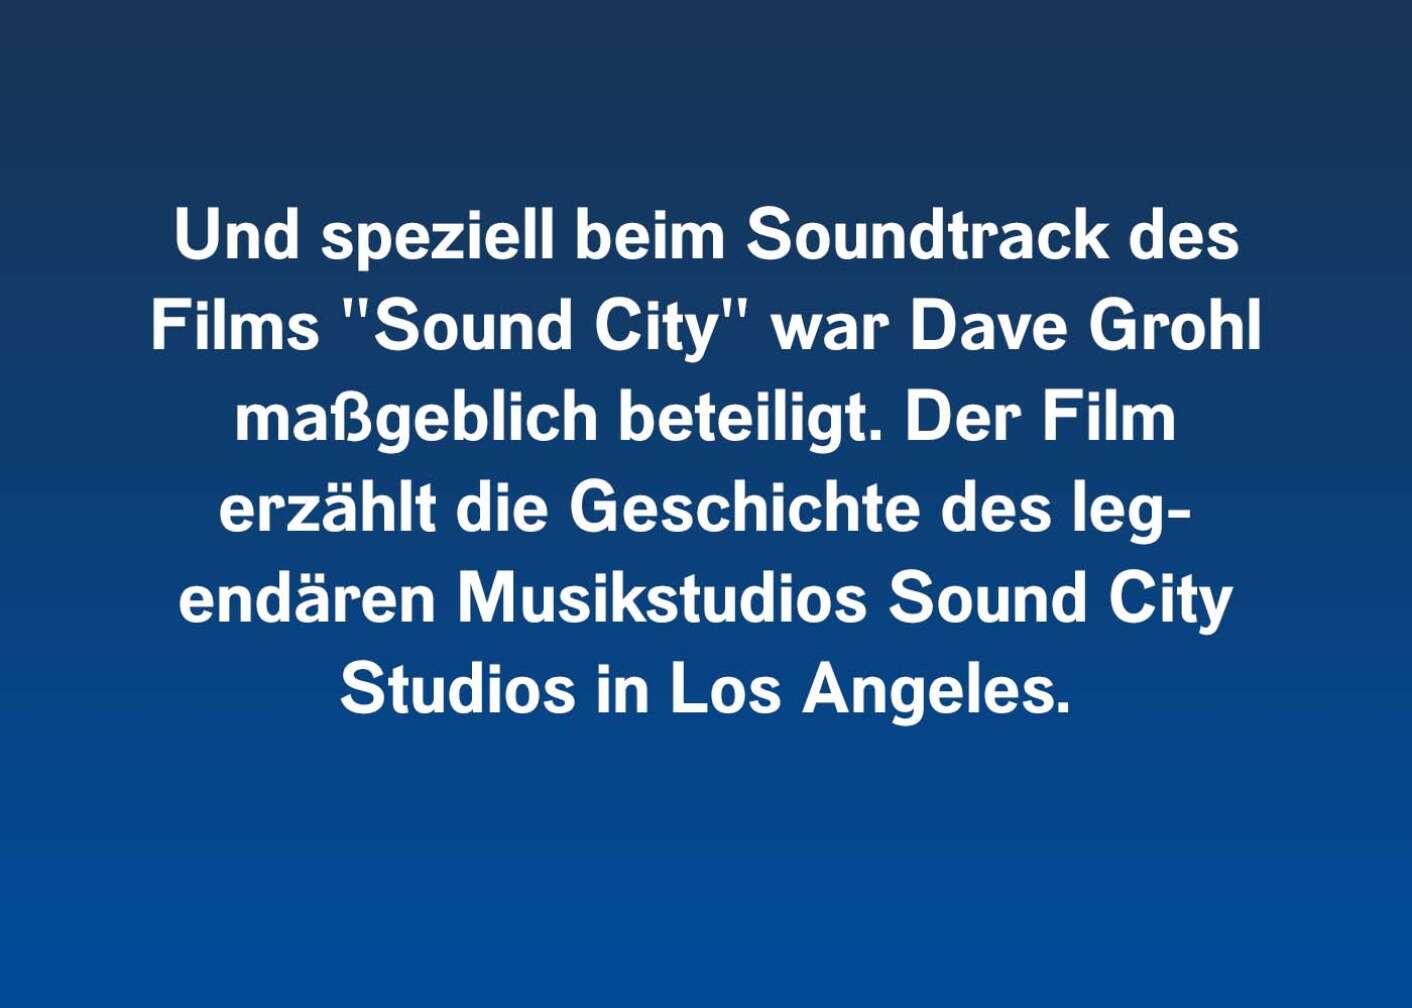 Und speziell beim Soundtrack des Films "Sound City" war Dave Grohl maßgeblich beteiligt. Der Film erzählt die Geschichte des legendären Musikstudios Sound City Studios in Los Angeles.